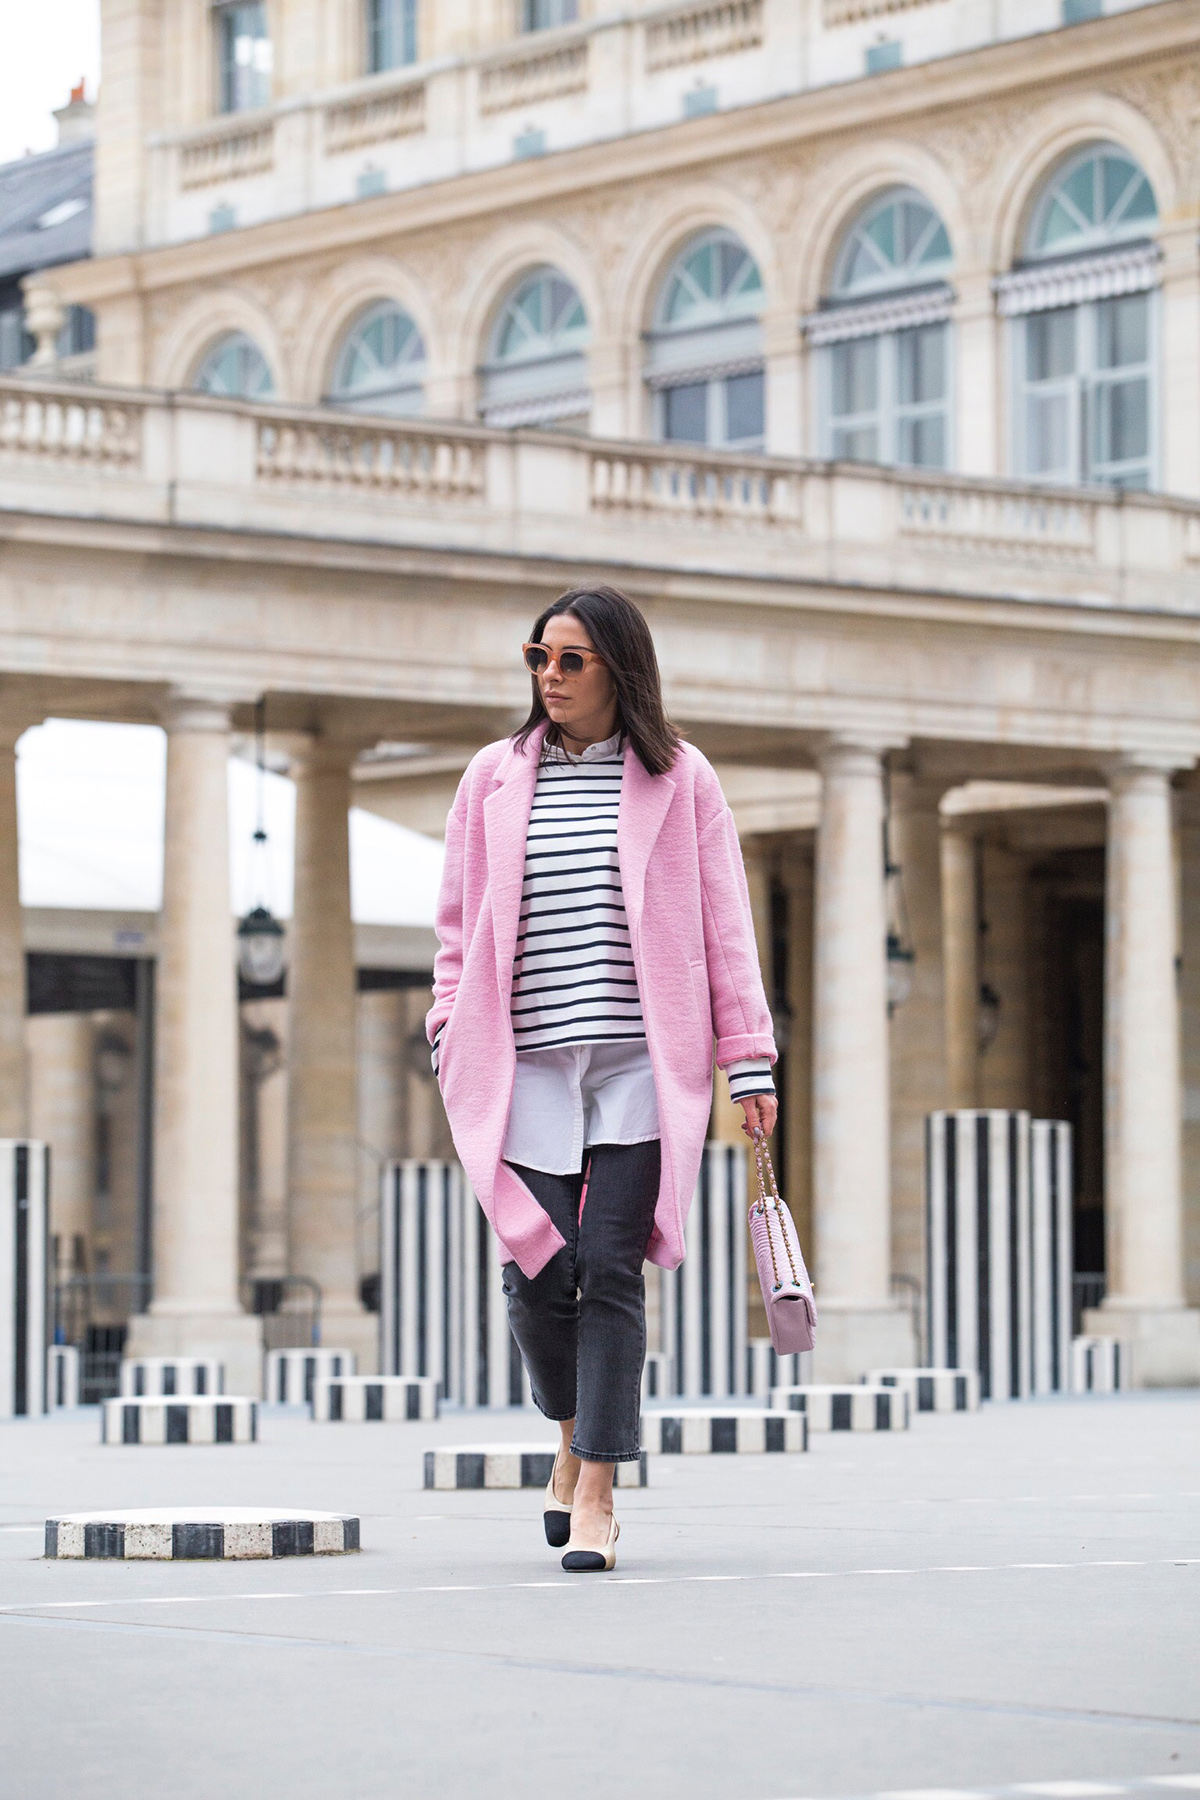 Stella Asteria Fashion & Lifestyle Blogger wearing pink Chanel bag and pink coat at Palais Royal